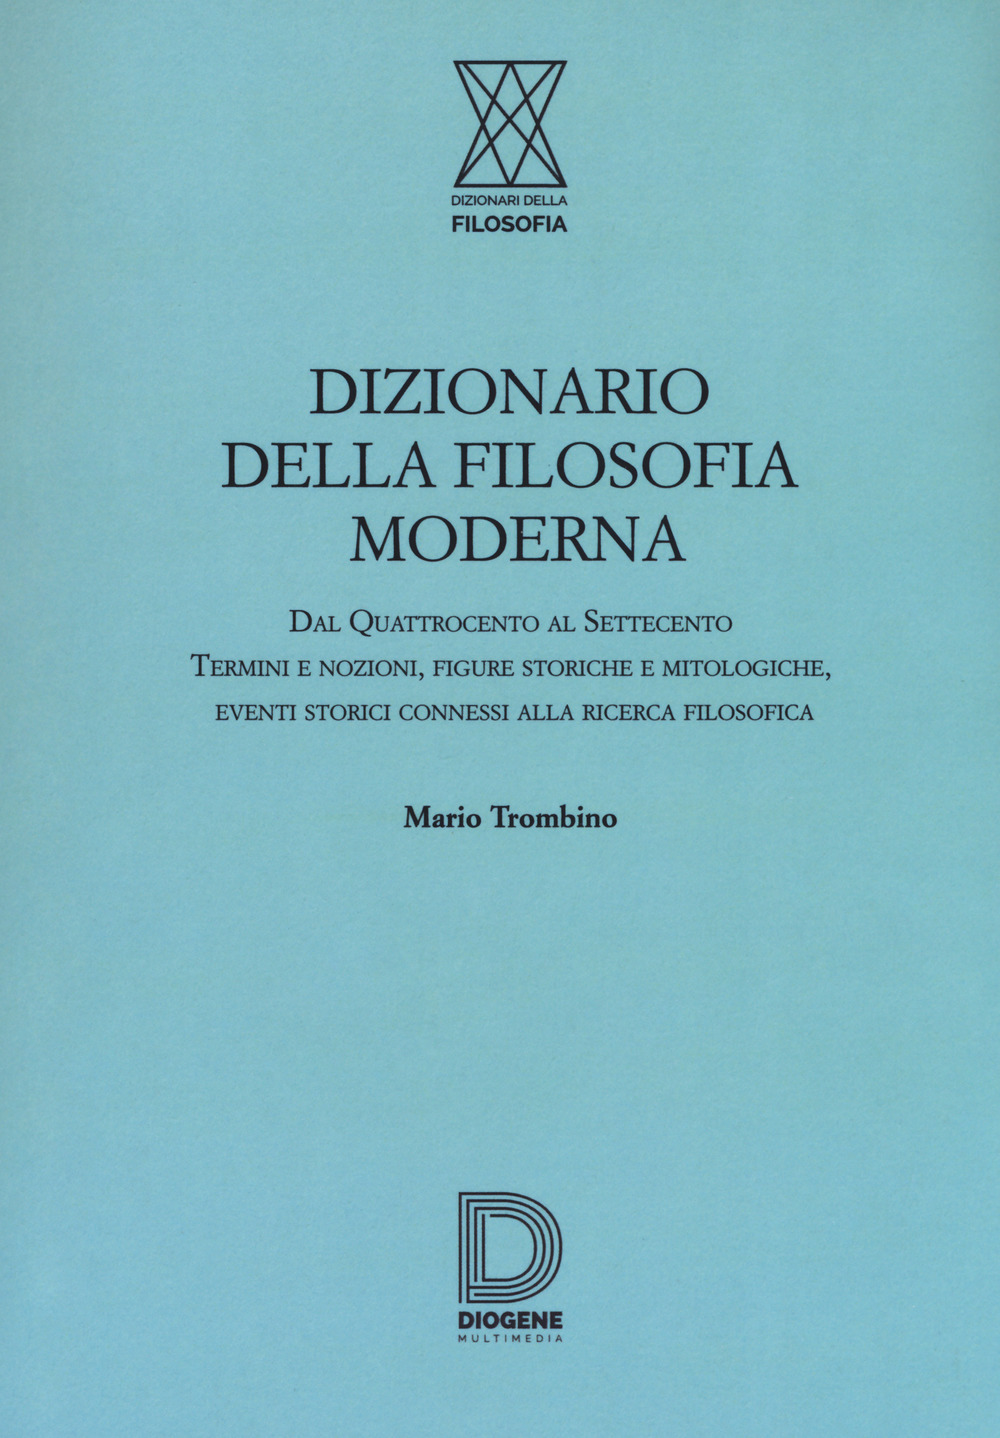 Libri Mario Trombino - Dizionario Della Filosofia Moderna NUOVO SIGILLATO, EDIZIONE DEL 01/02/2018 SUBITO DISPONIBILE